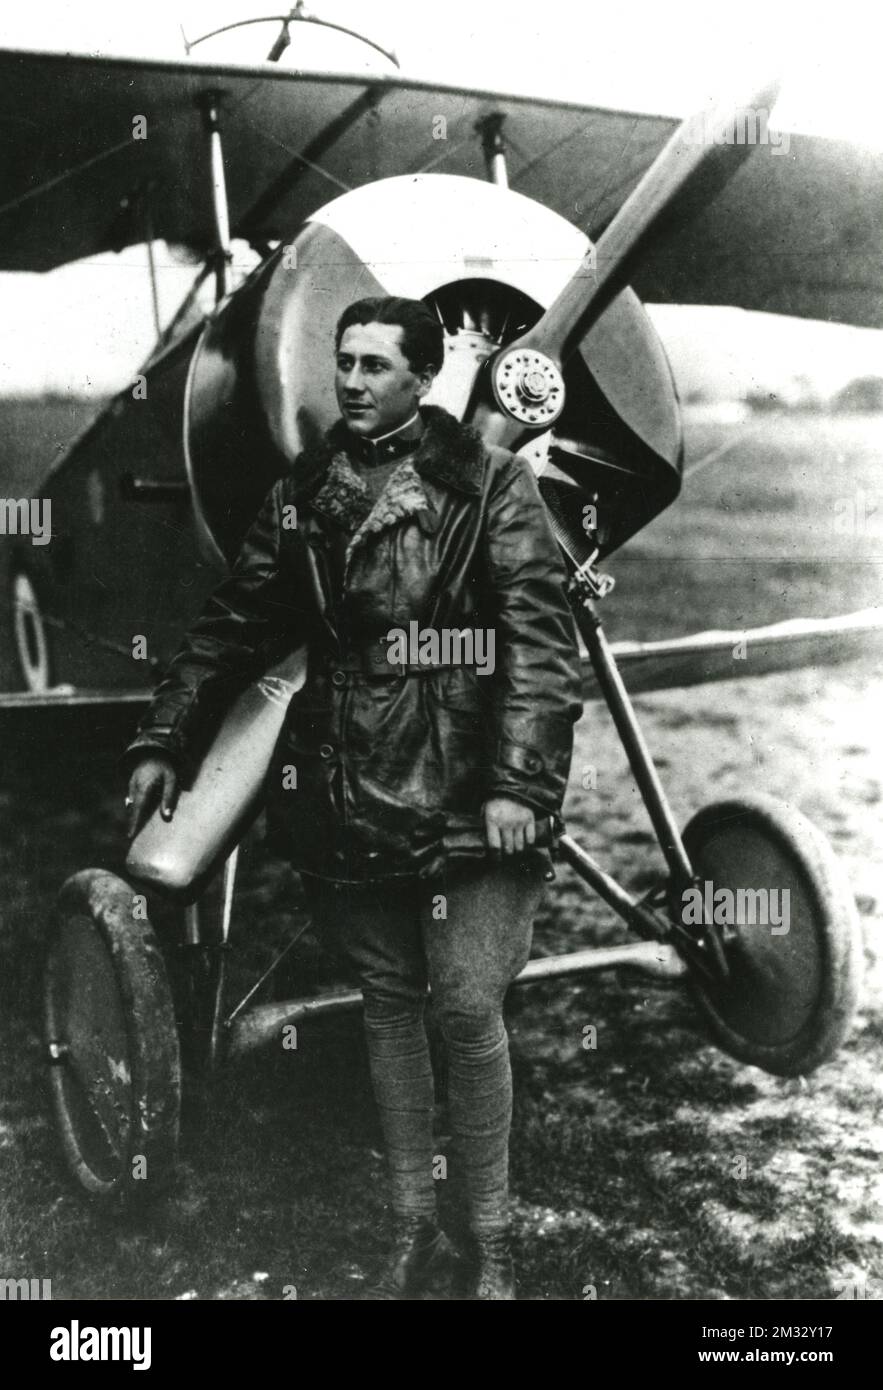 Aeroplani - Aviatore Arturo dell’Oro pilota dell’areonautica militare italiana che si schiantò sui monti sopra Belluno il 1° settembre 1917 dopo un’azione eroica che gli valse la medaglia d’oro al valor militare Banque D'Images